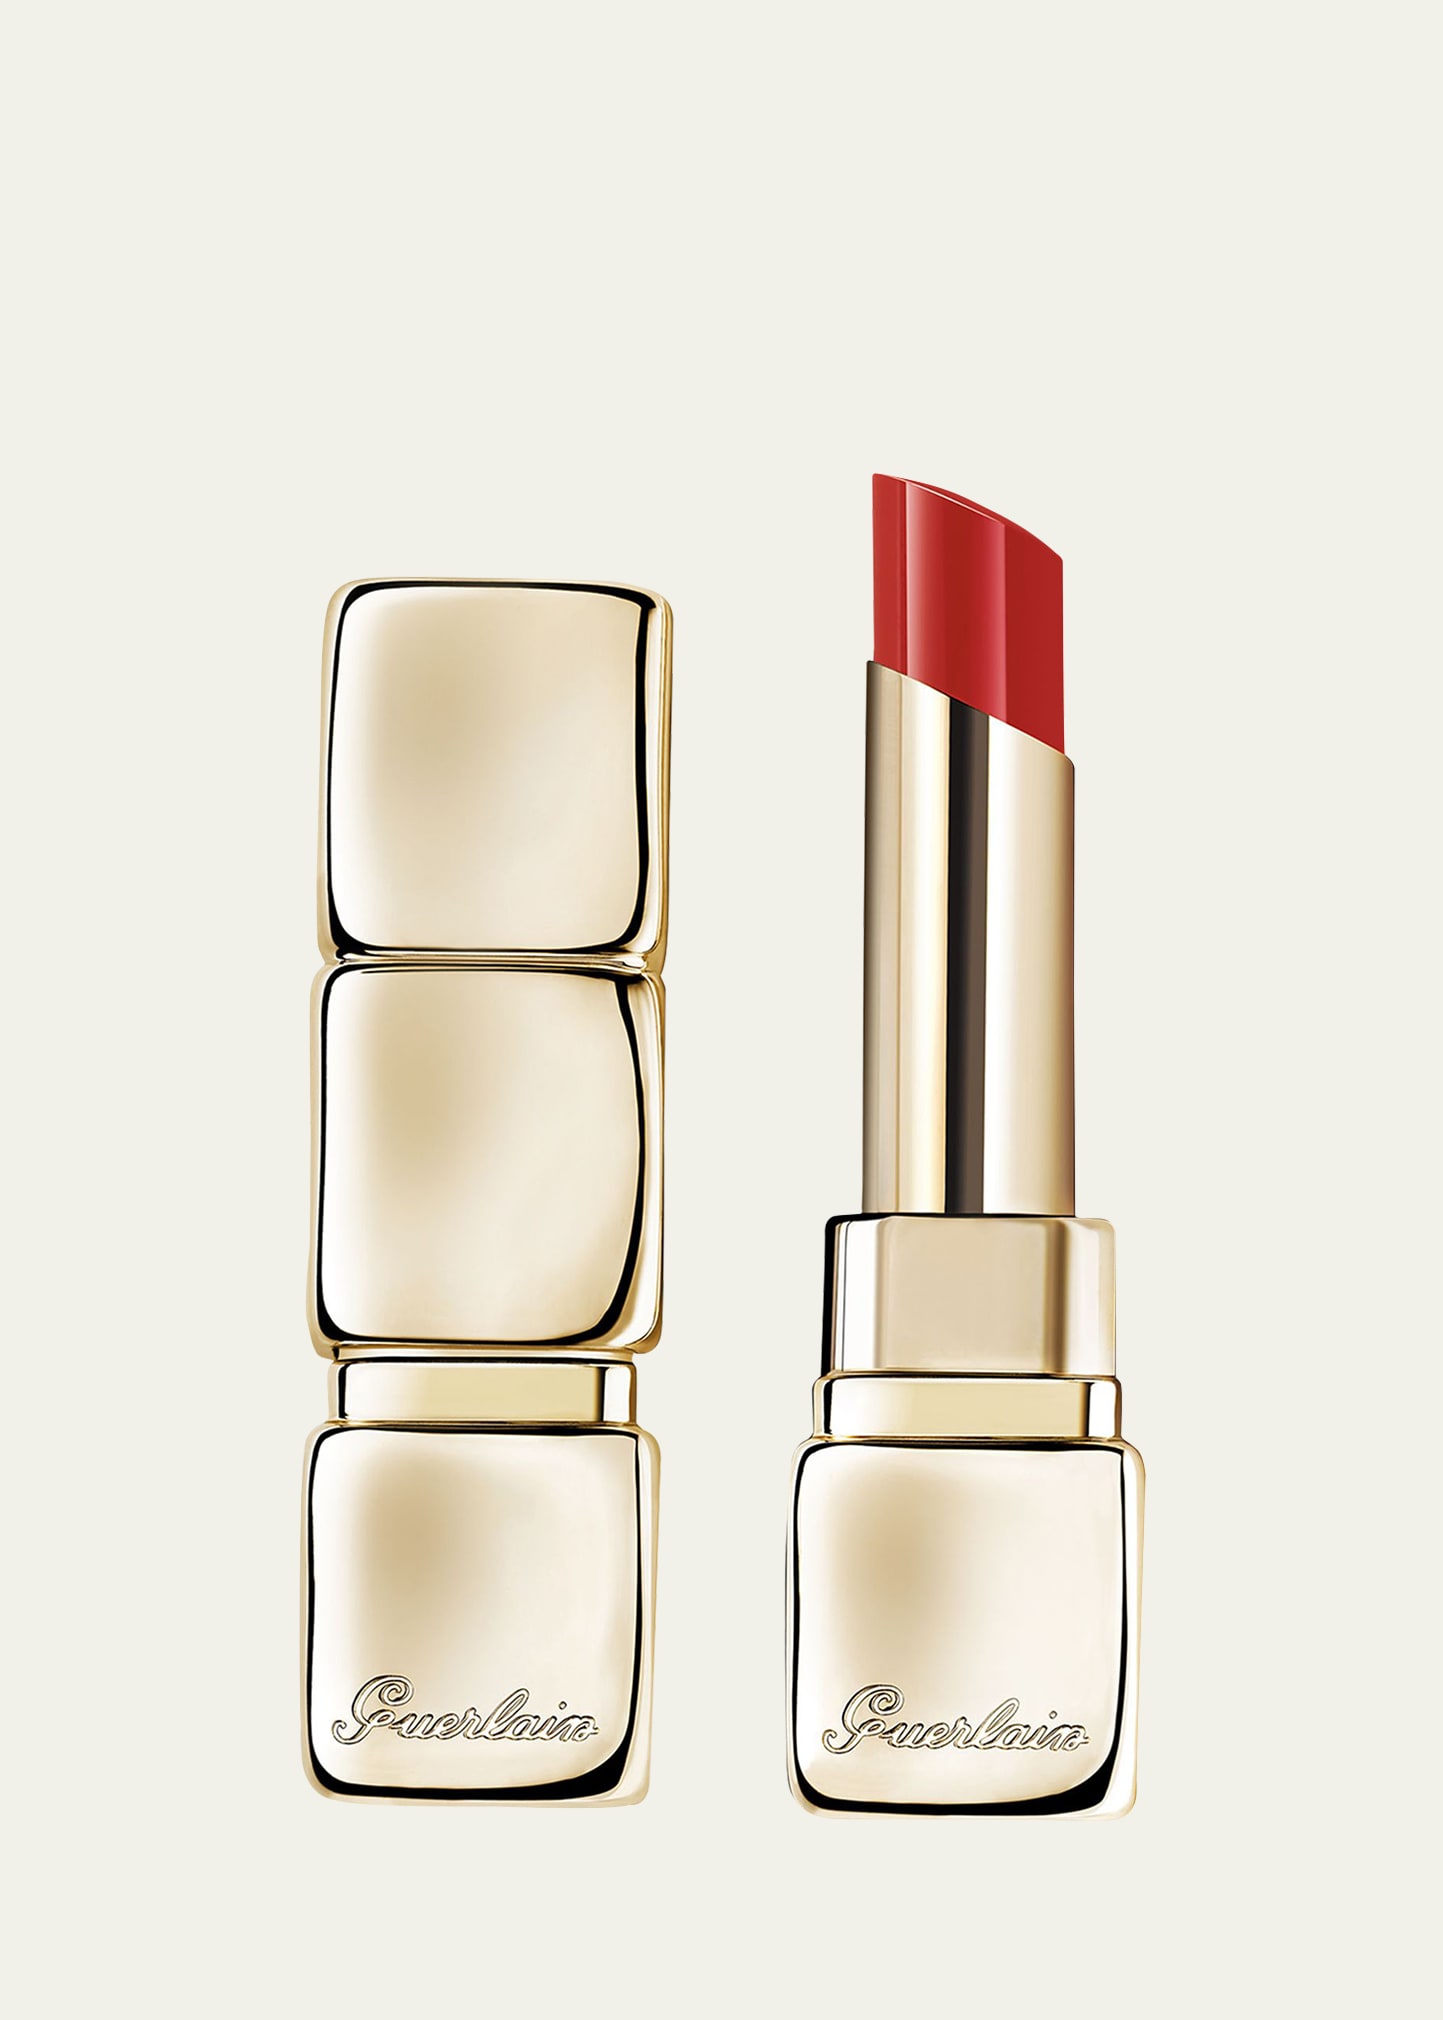 Guerlain Kisskiss Shine Bloom Lipstick Balm In 709 Petal Red